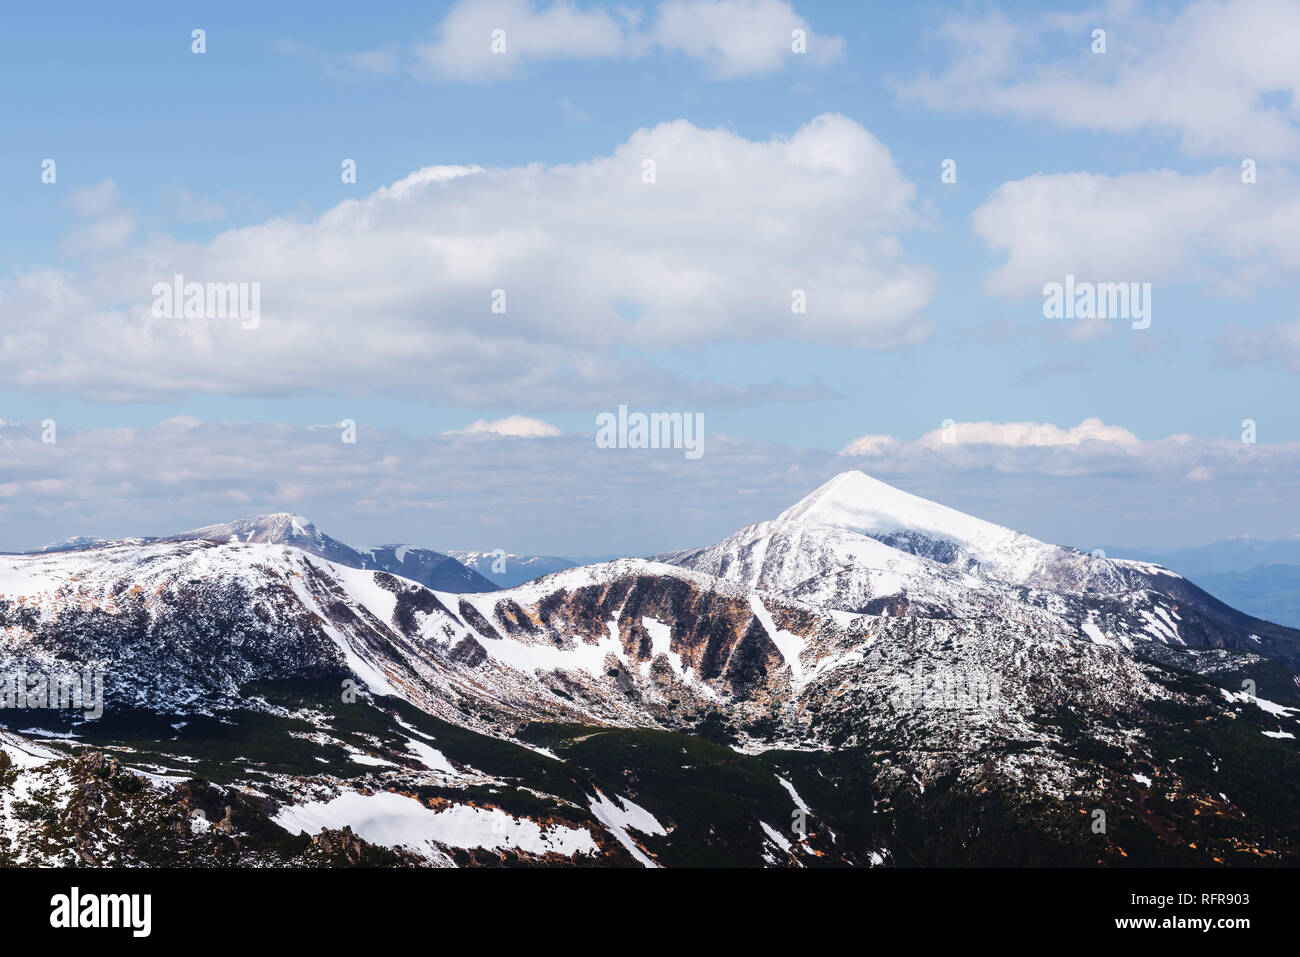 Vista de las colinas pedregosas con la nieve y el cielo azul. Dramática escena de primavera. Fotografía paisajística Foto de stock